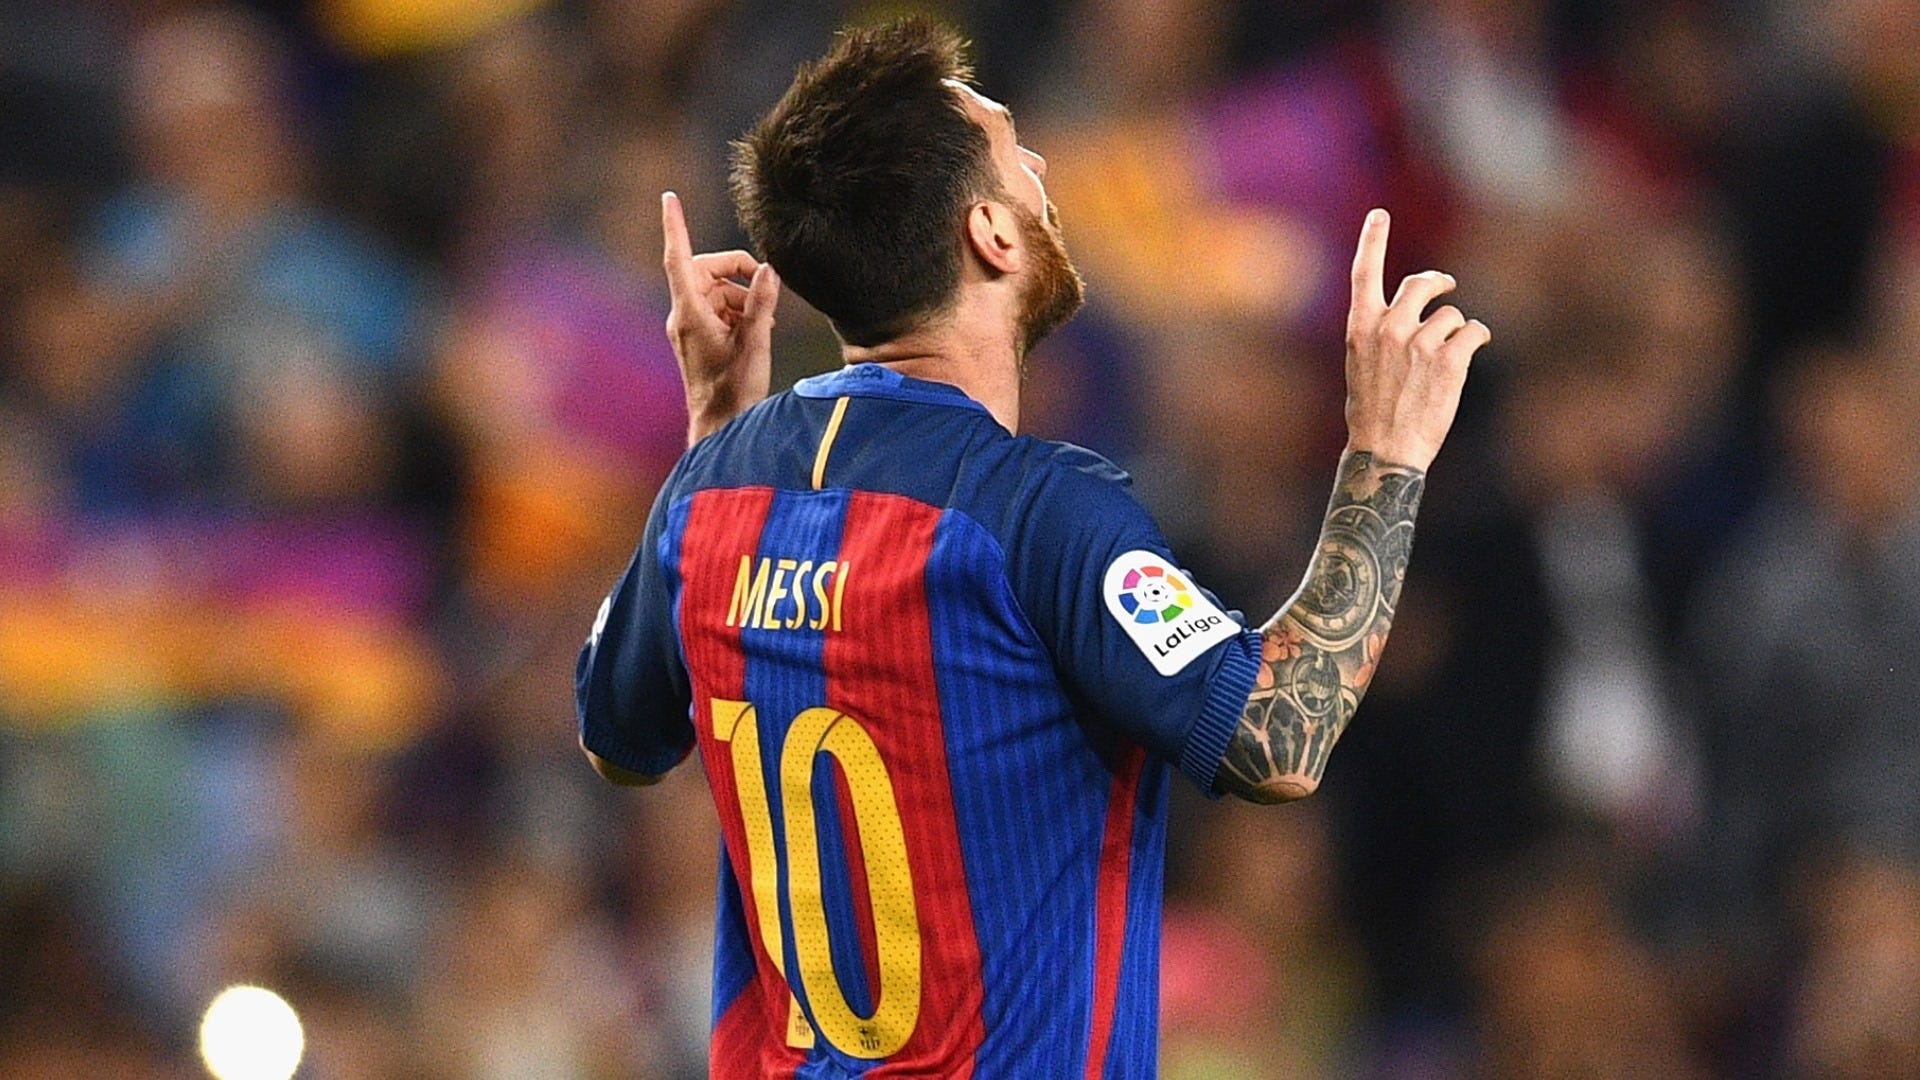 Messi vua phá lưới La Liga 2016-17 - Ai là người không muốn thưởng thức những khoảnh khắc ấy? Điều này chứng tỏ rằng Messi không chỉ là một cầu thủ tài năng mà còn là một siêu sao sáng giá. Nếu bạn là một fan hâm mộ của Messi, hãy nhanh tay xem hình ảnh này!